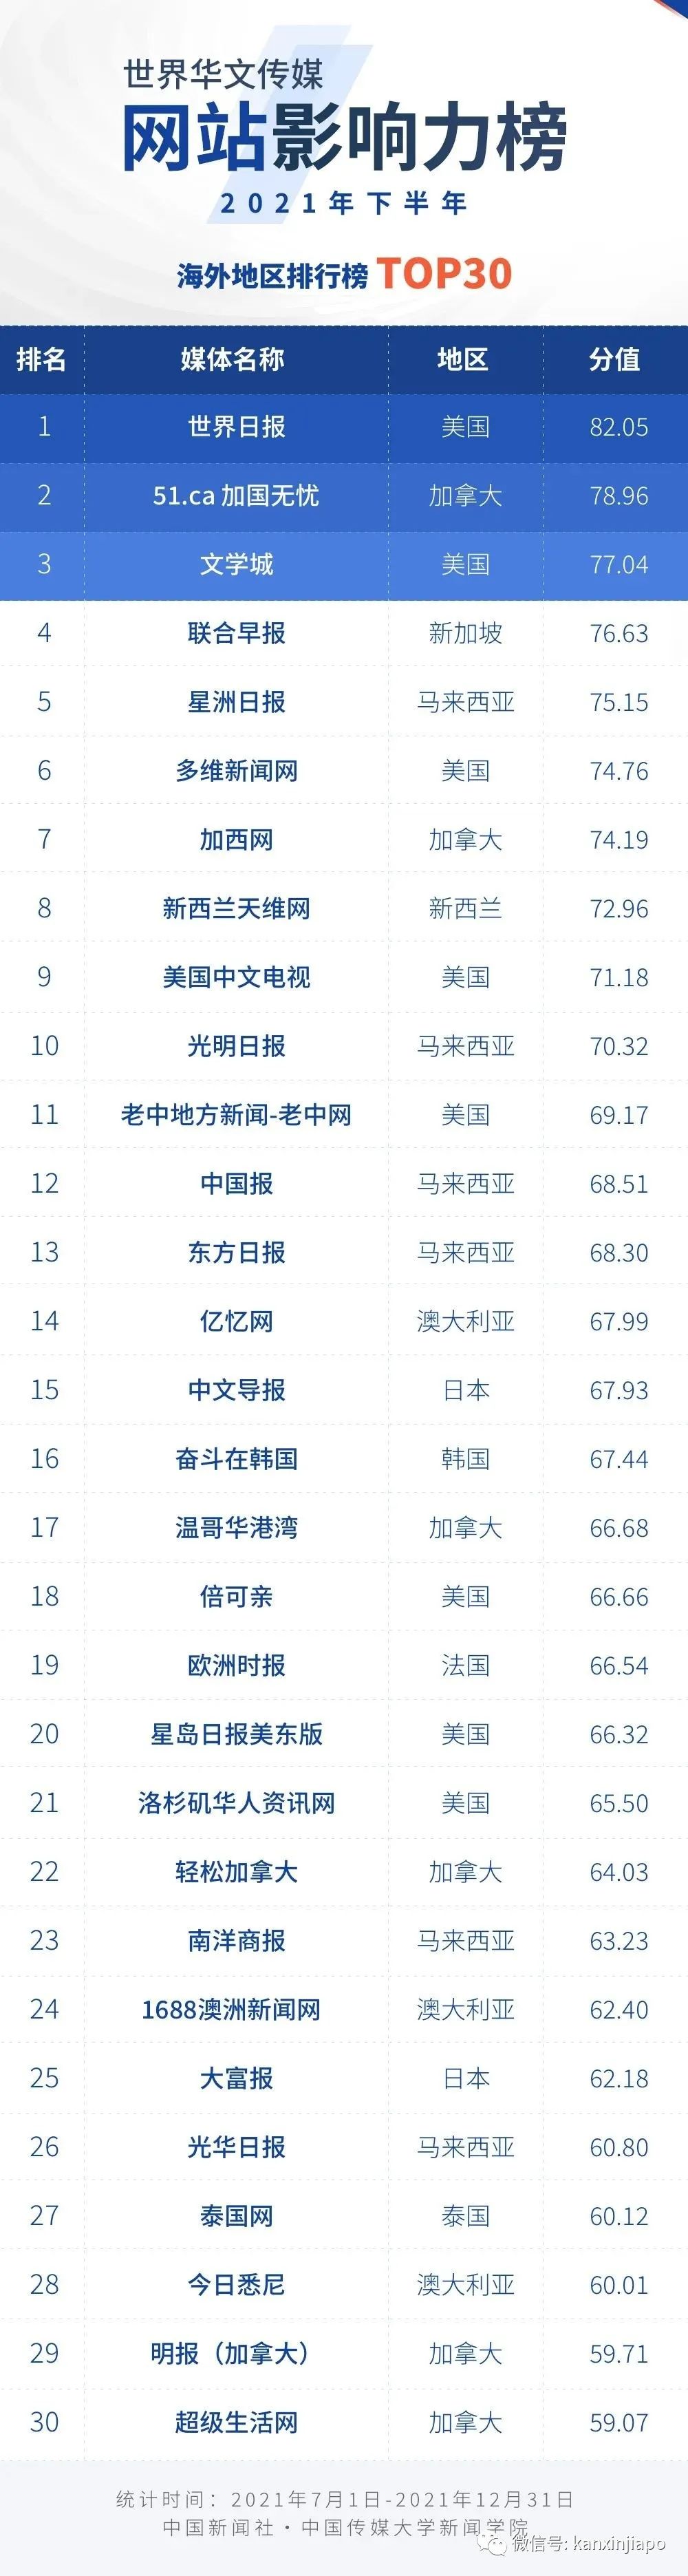 中国发布世界华文新媒体影响力榜，新加坡只有两家上榜